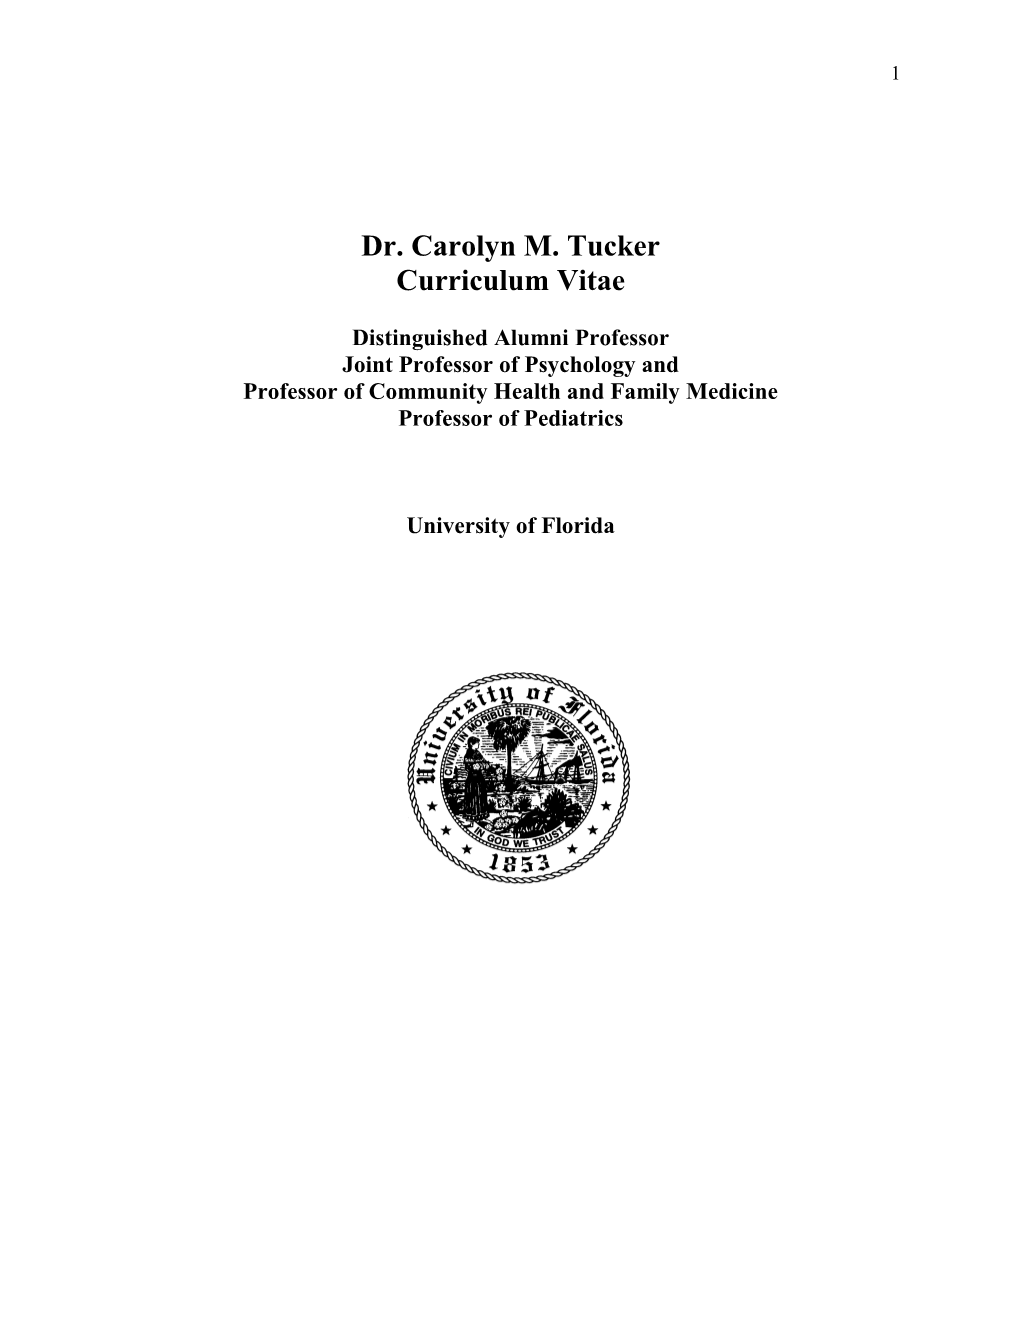 Dr. Carolyn M. Tucker